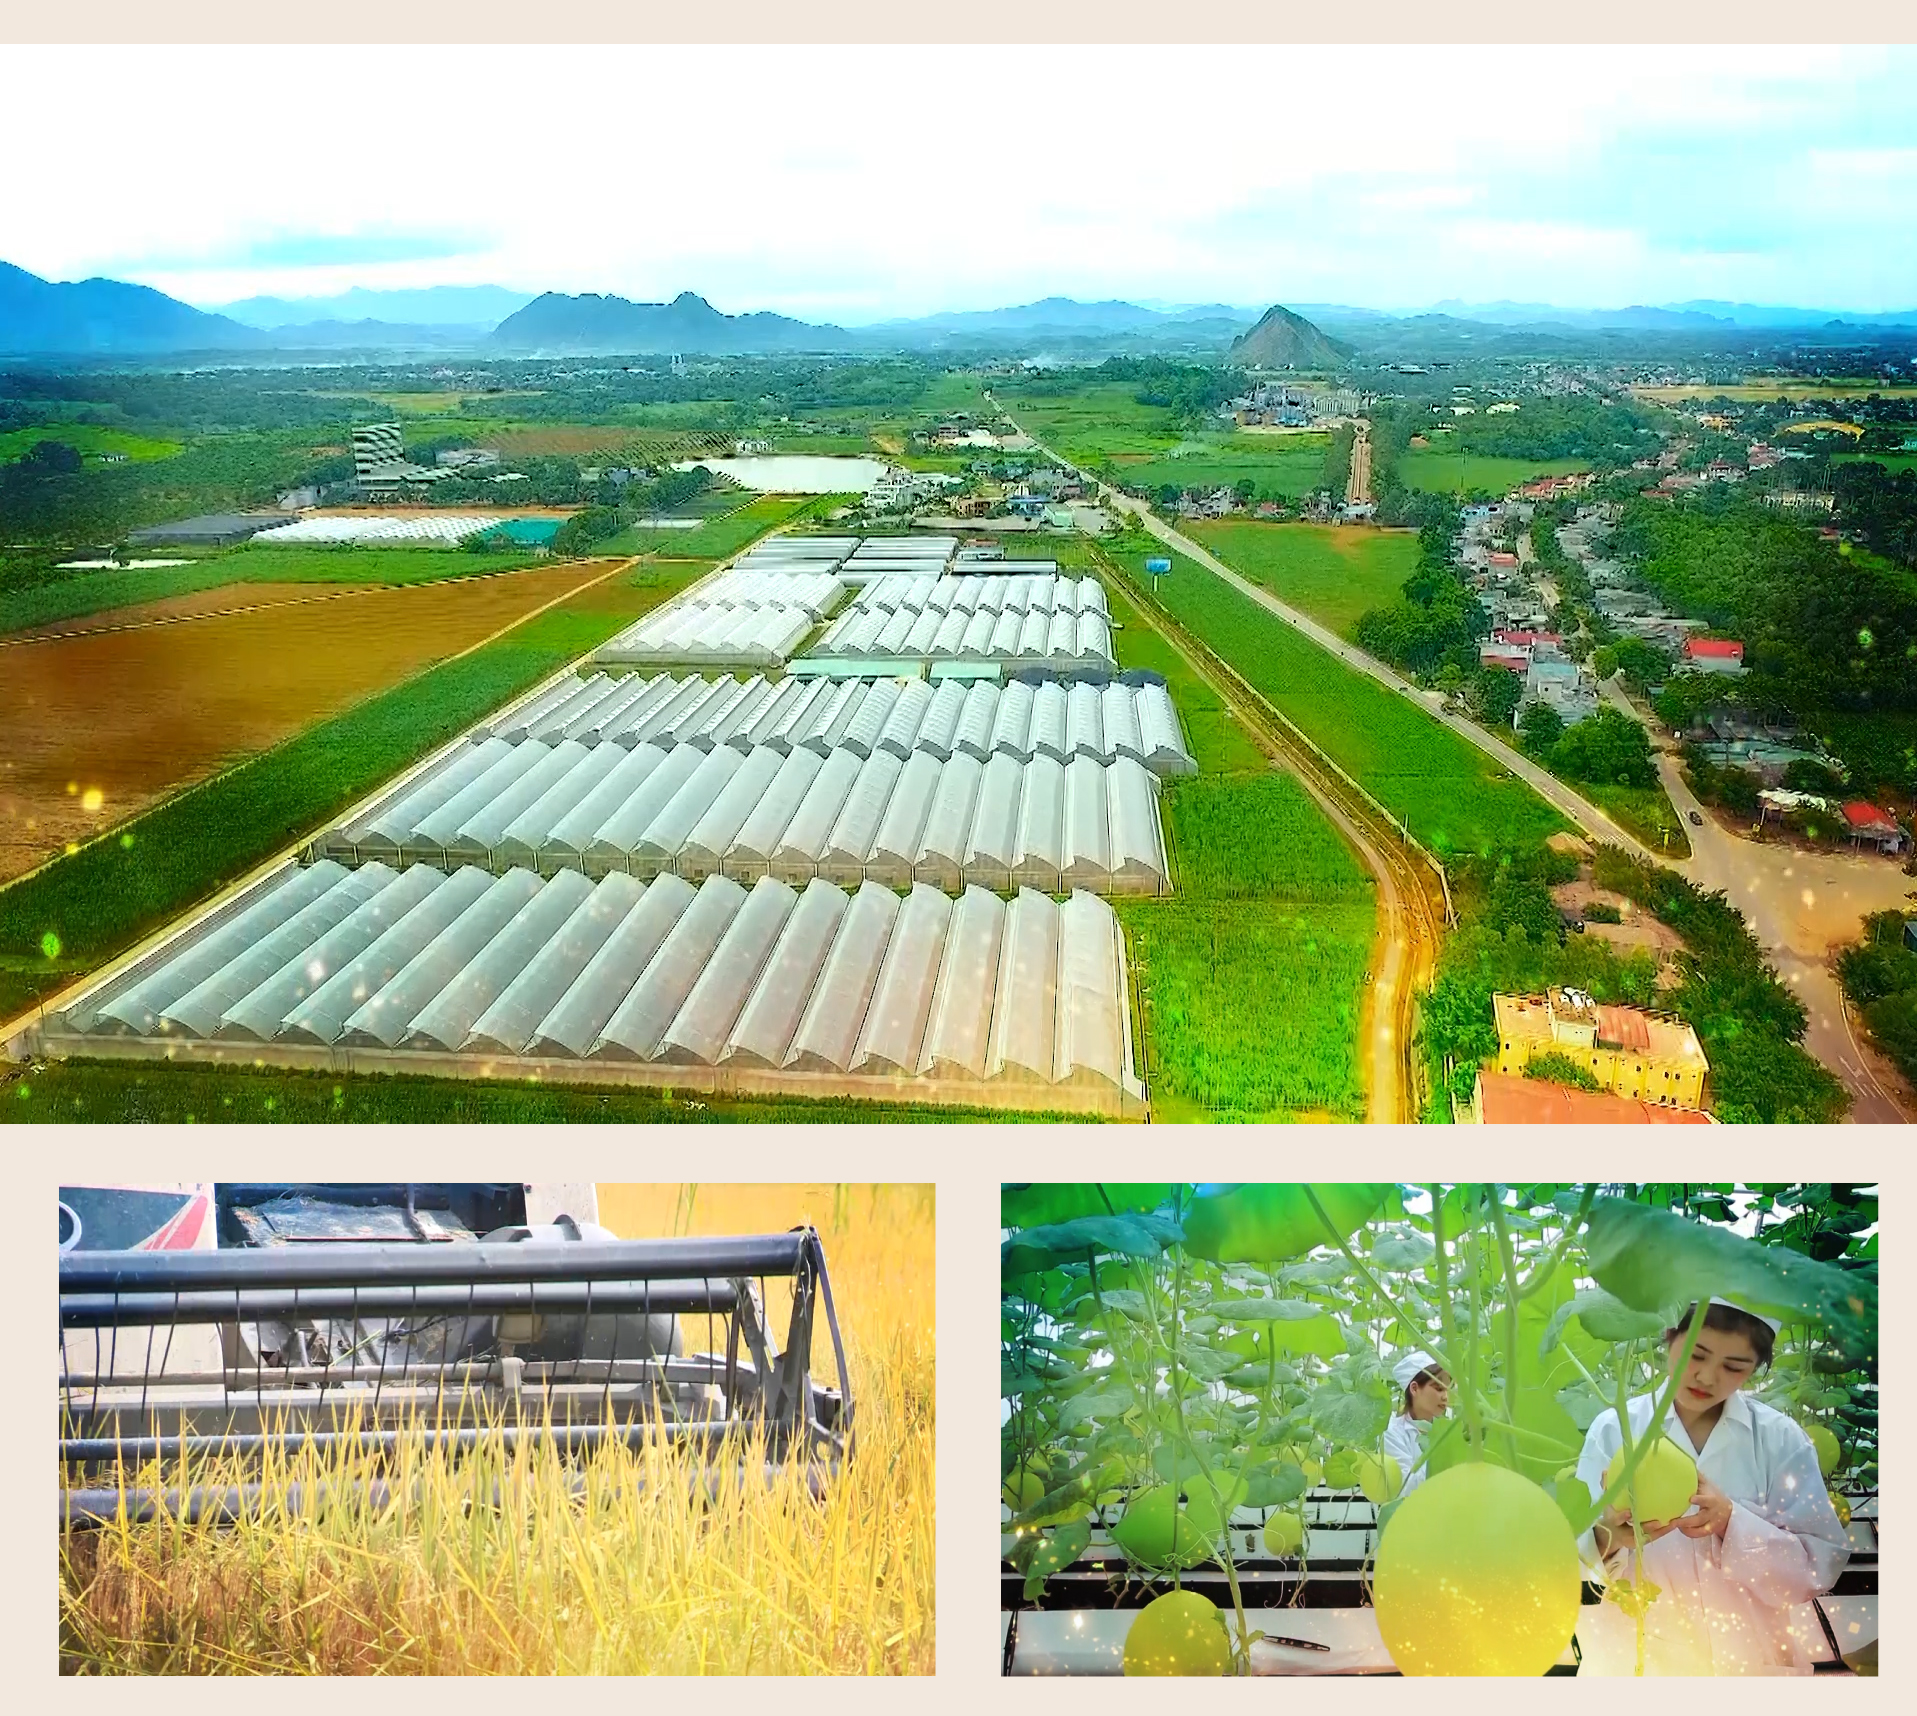 Trại chăn nuôi phát triển theo hướng bền vững và hiệu quả  GREENFEED Việt  Nam